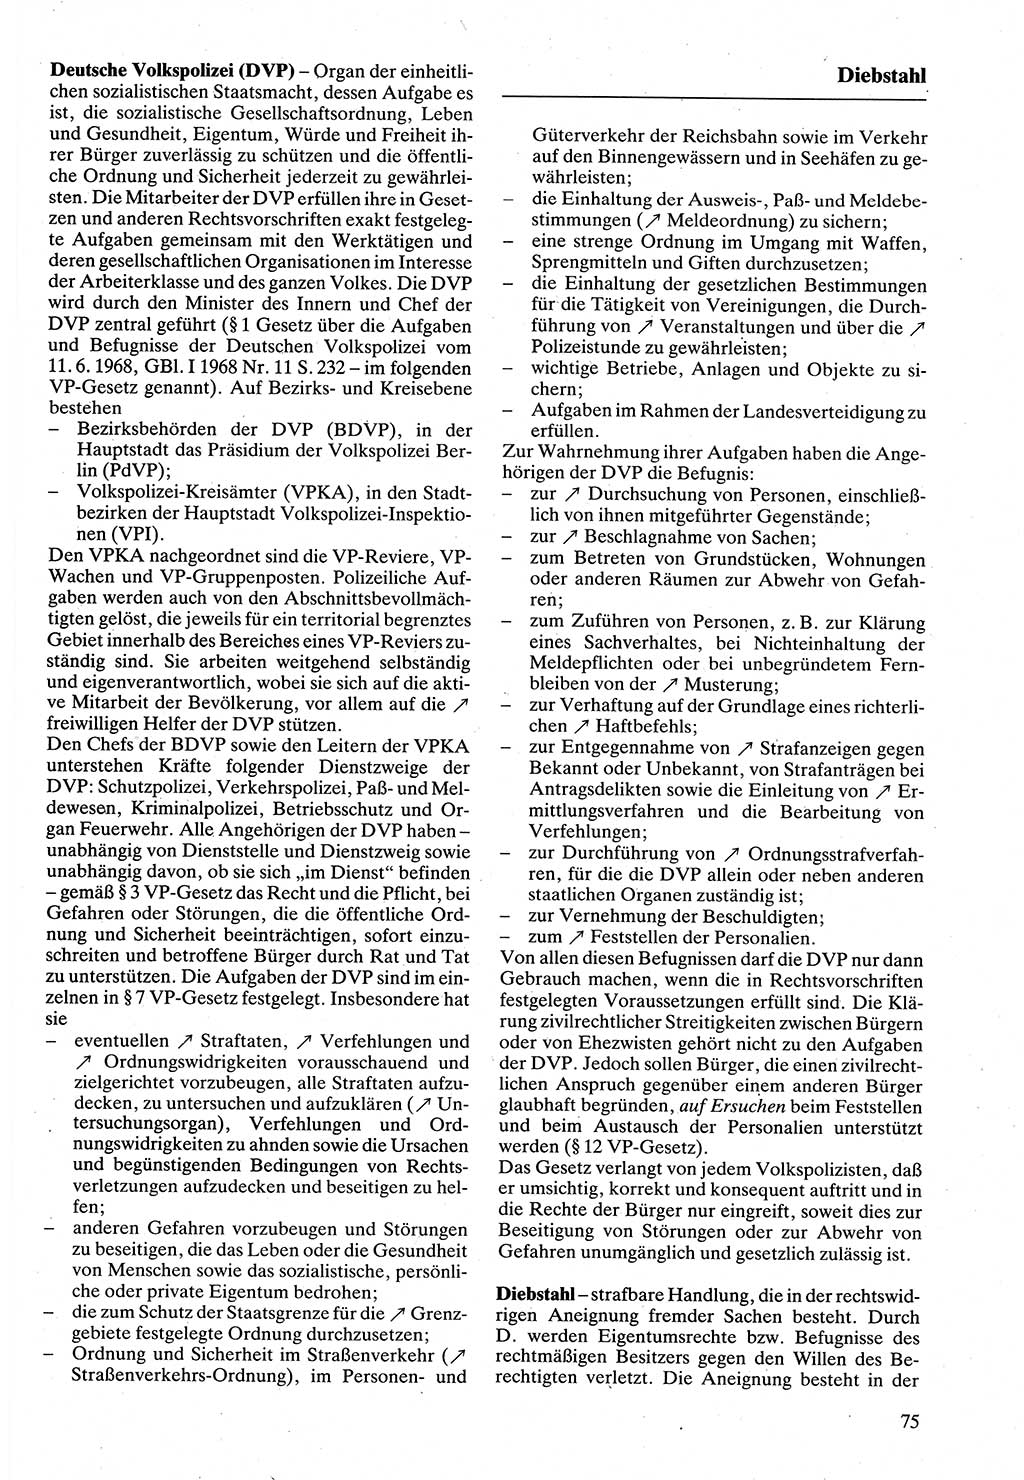 Rechtslexikon [Deutsche Demokratische Republik (DDR)] 1988, Seite 75 (Rechtslex. DDR 1988, S. 75)